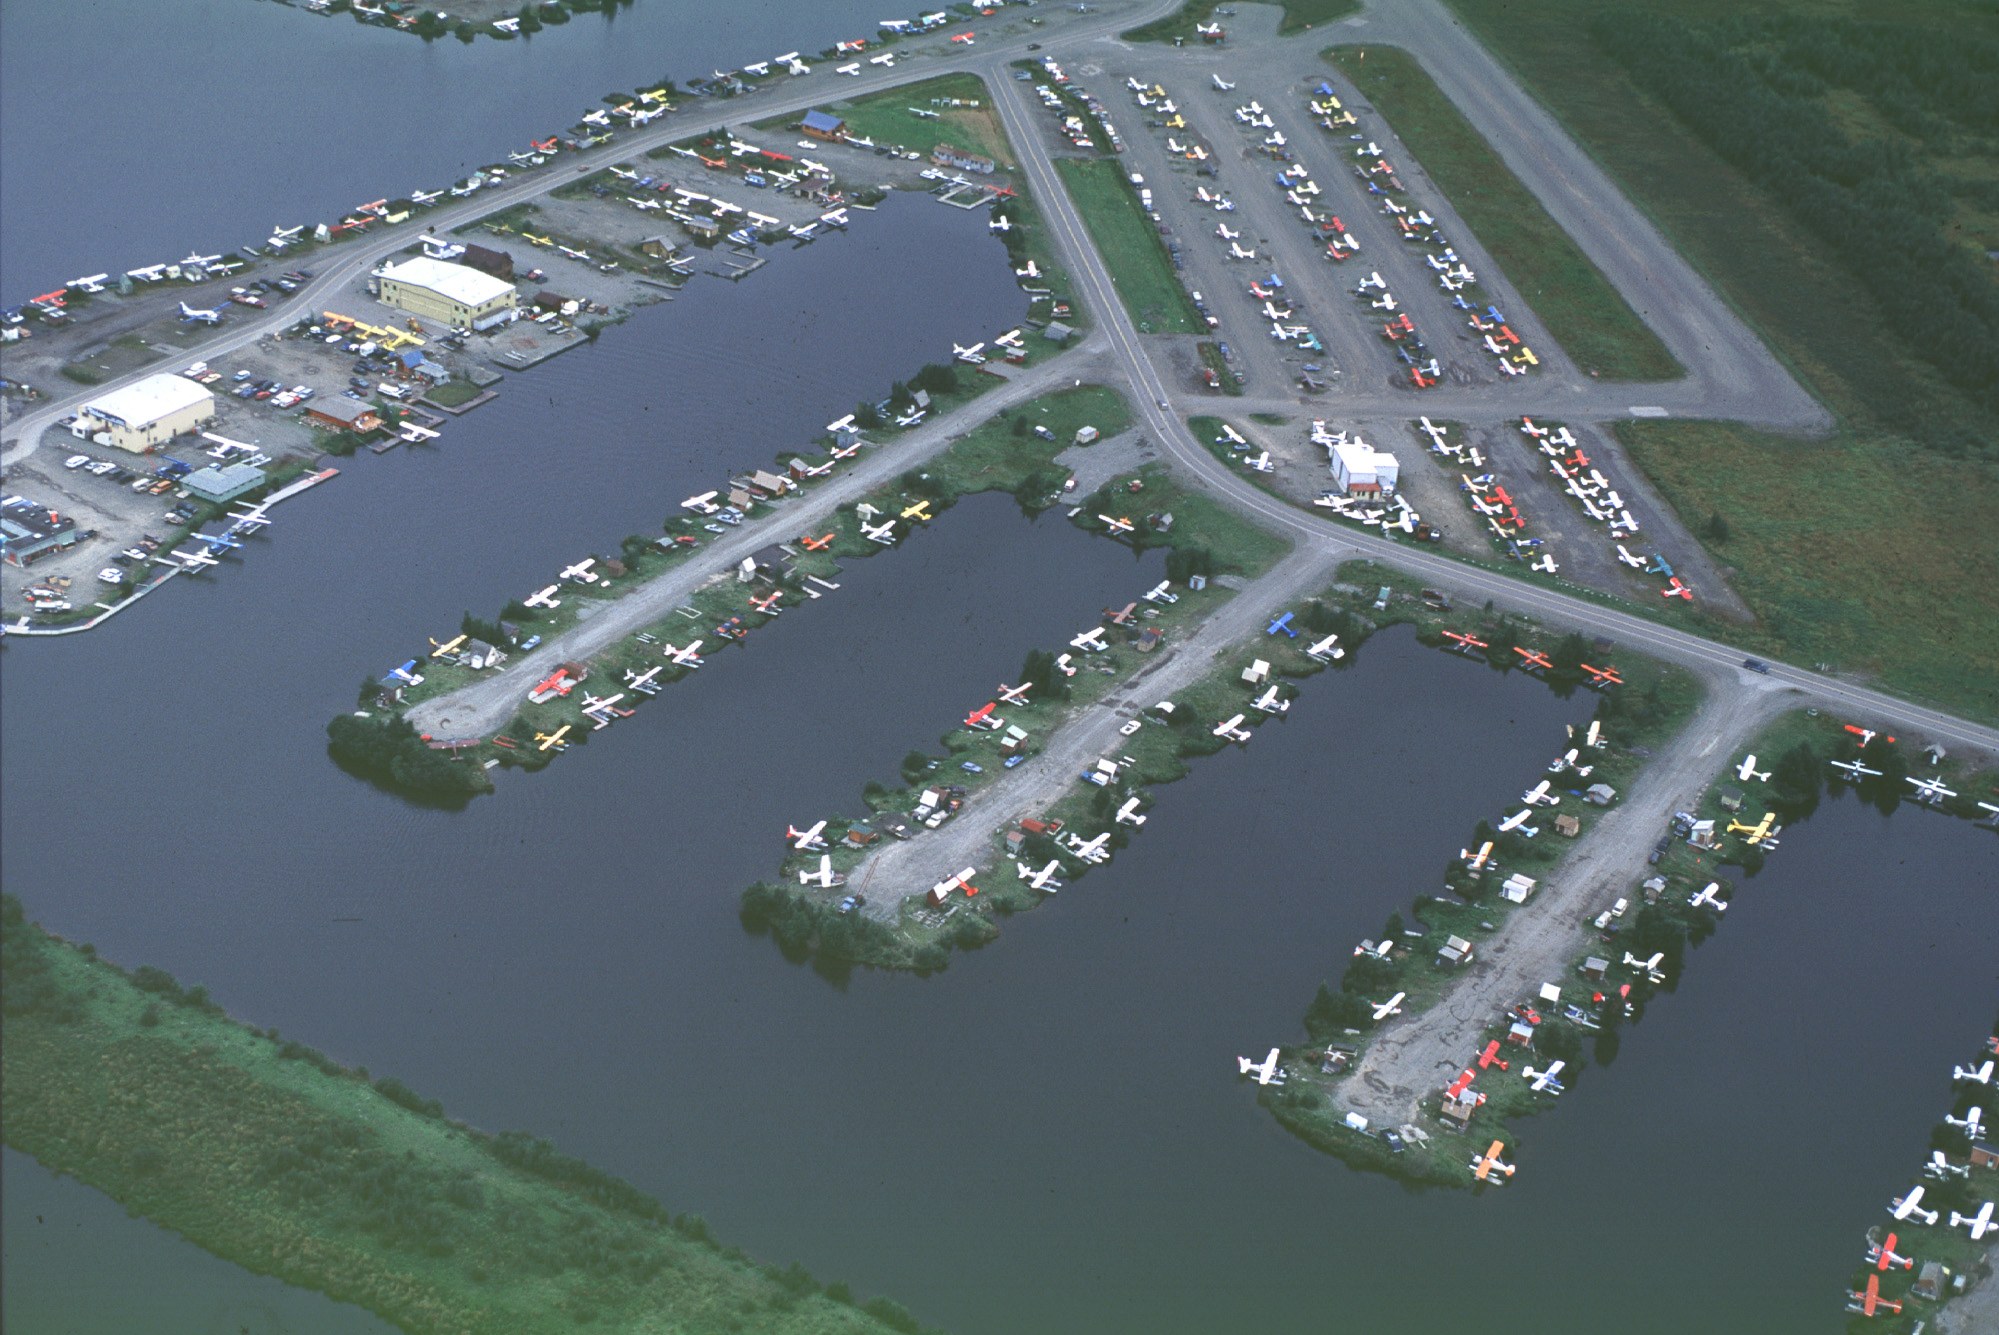 Ce n'est pas un port à bateau, mais un "garage" d'hydtravions près de l'aéroport d'Anchorage.